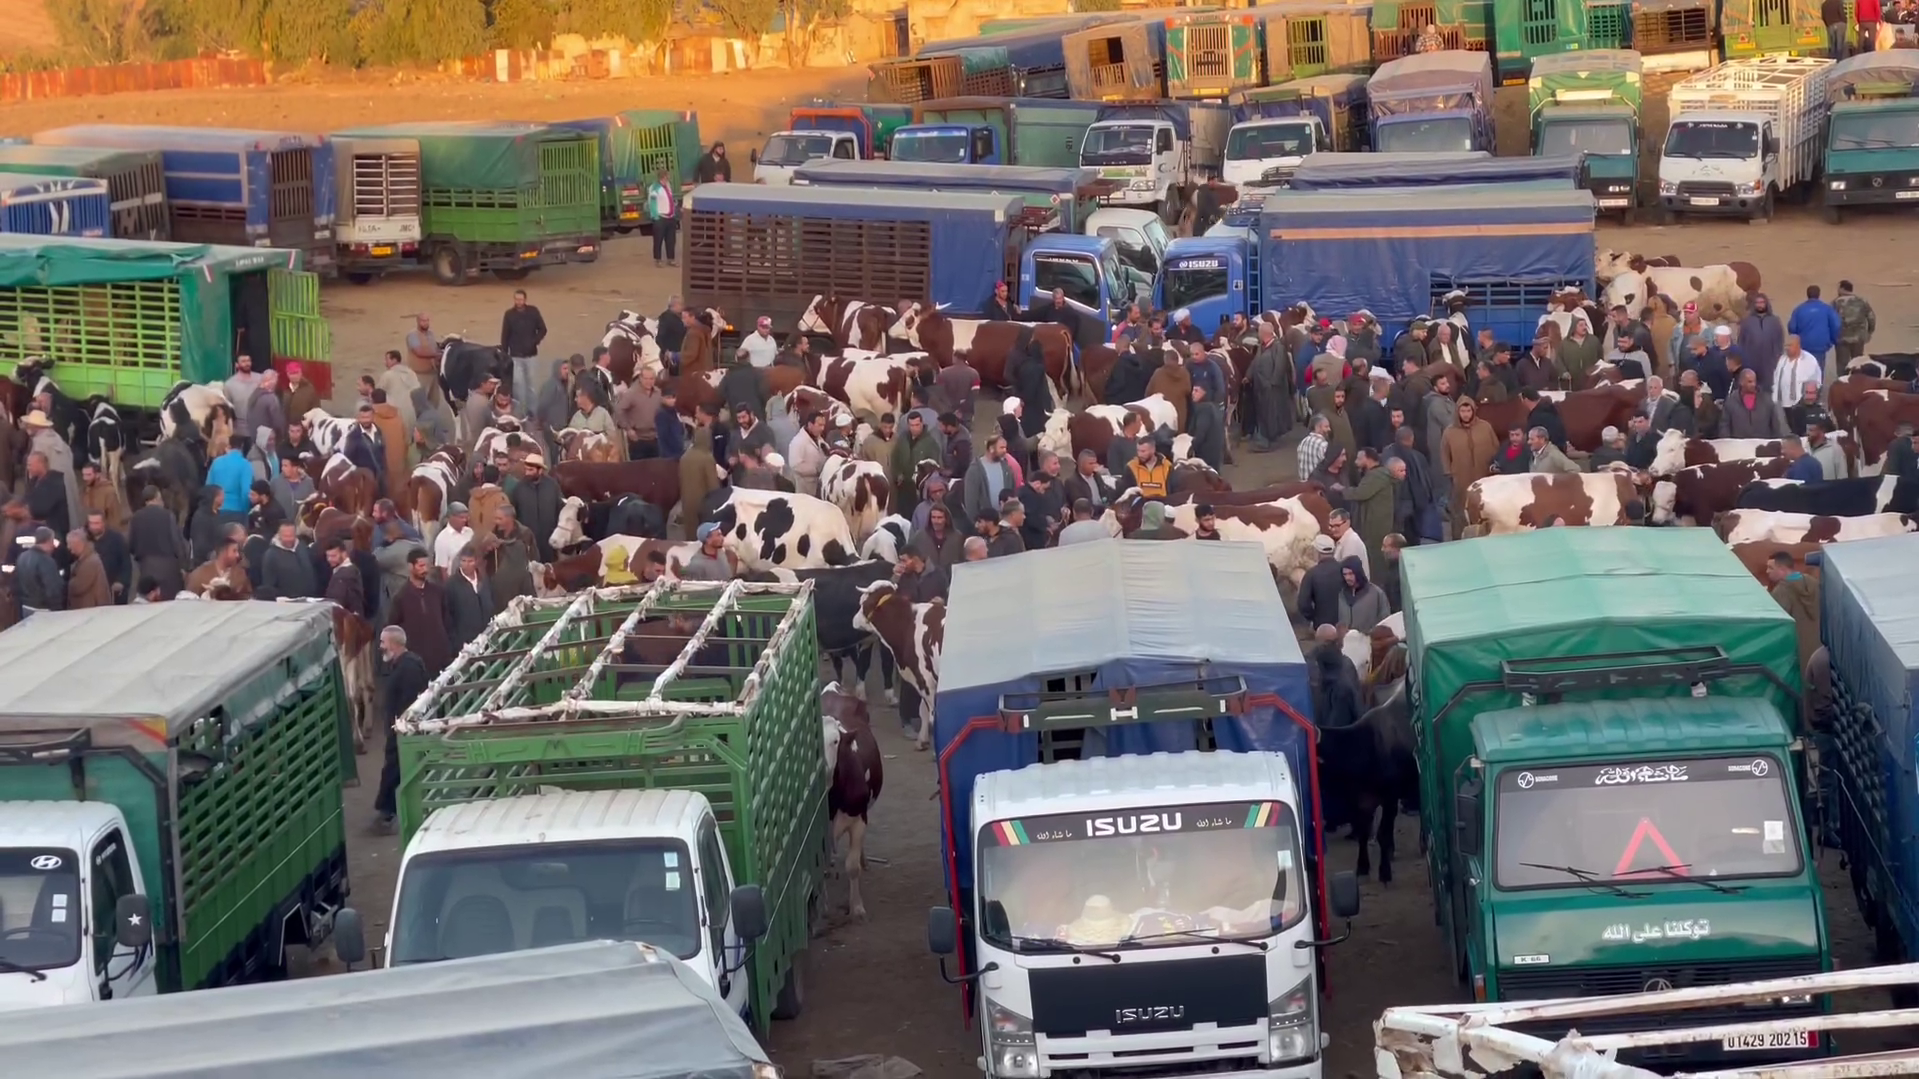 Heimische Rinder landen offenbar zu Tausenden in Algerien, wo das Tierwohl nicht viel zählt. (Bild: themarker.org)